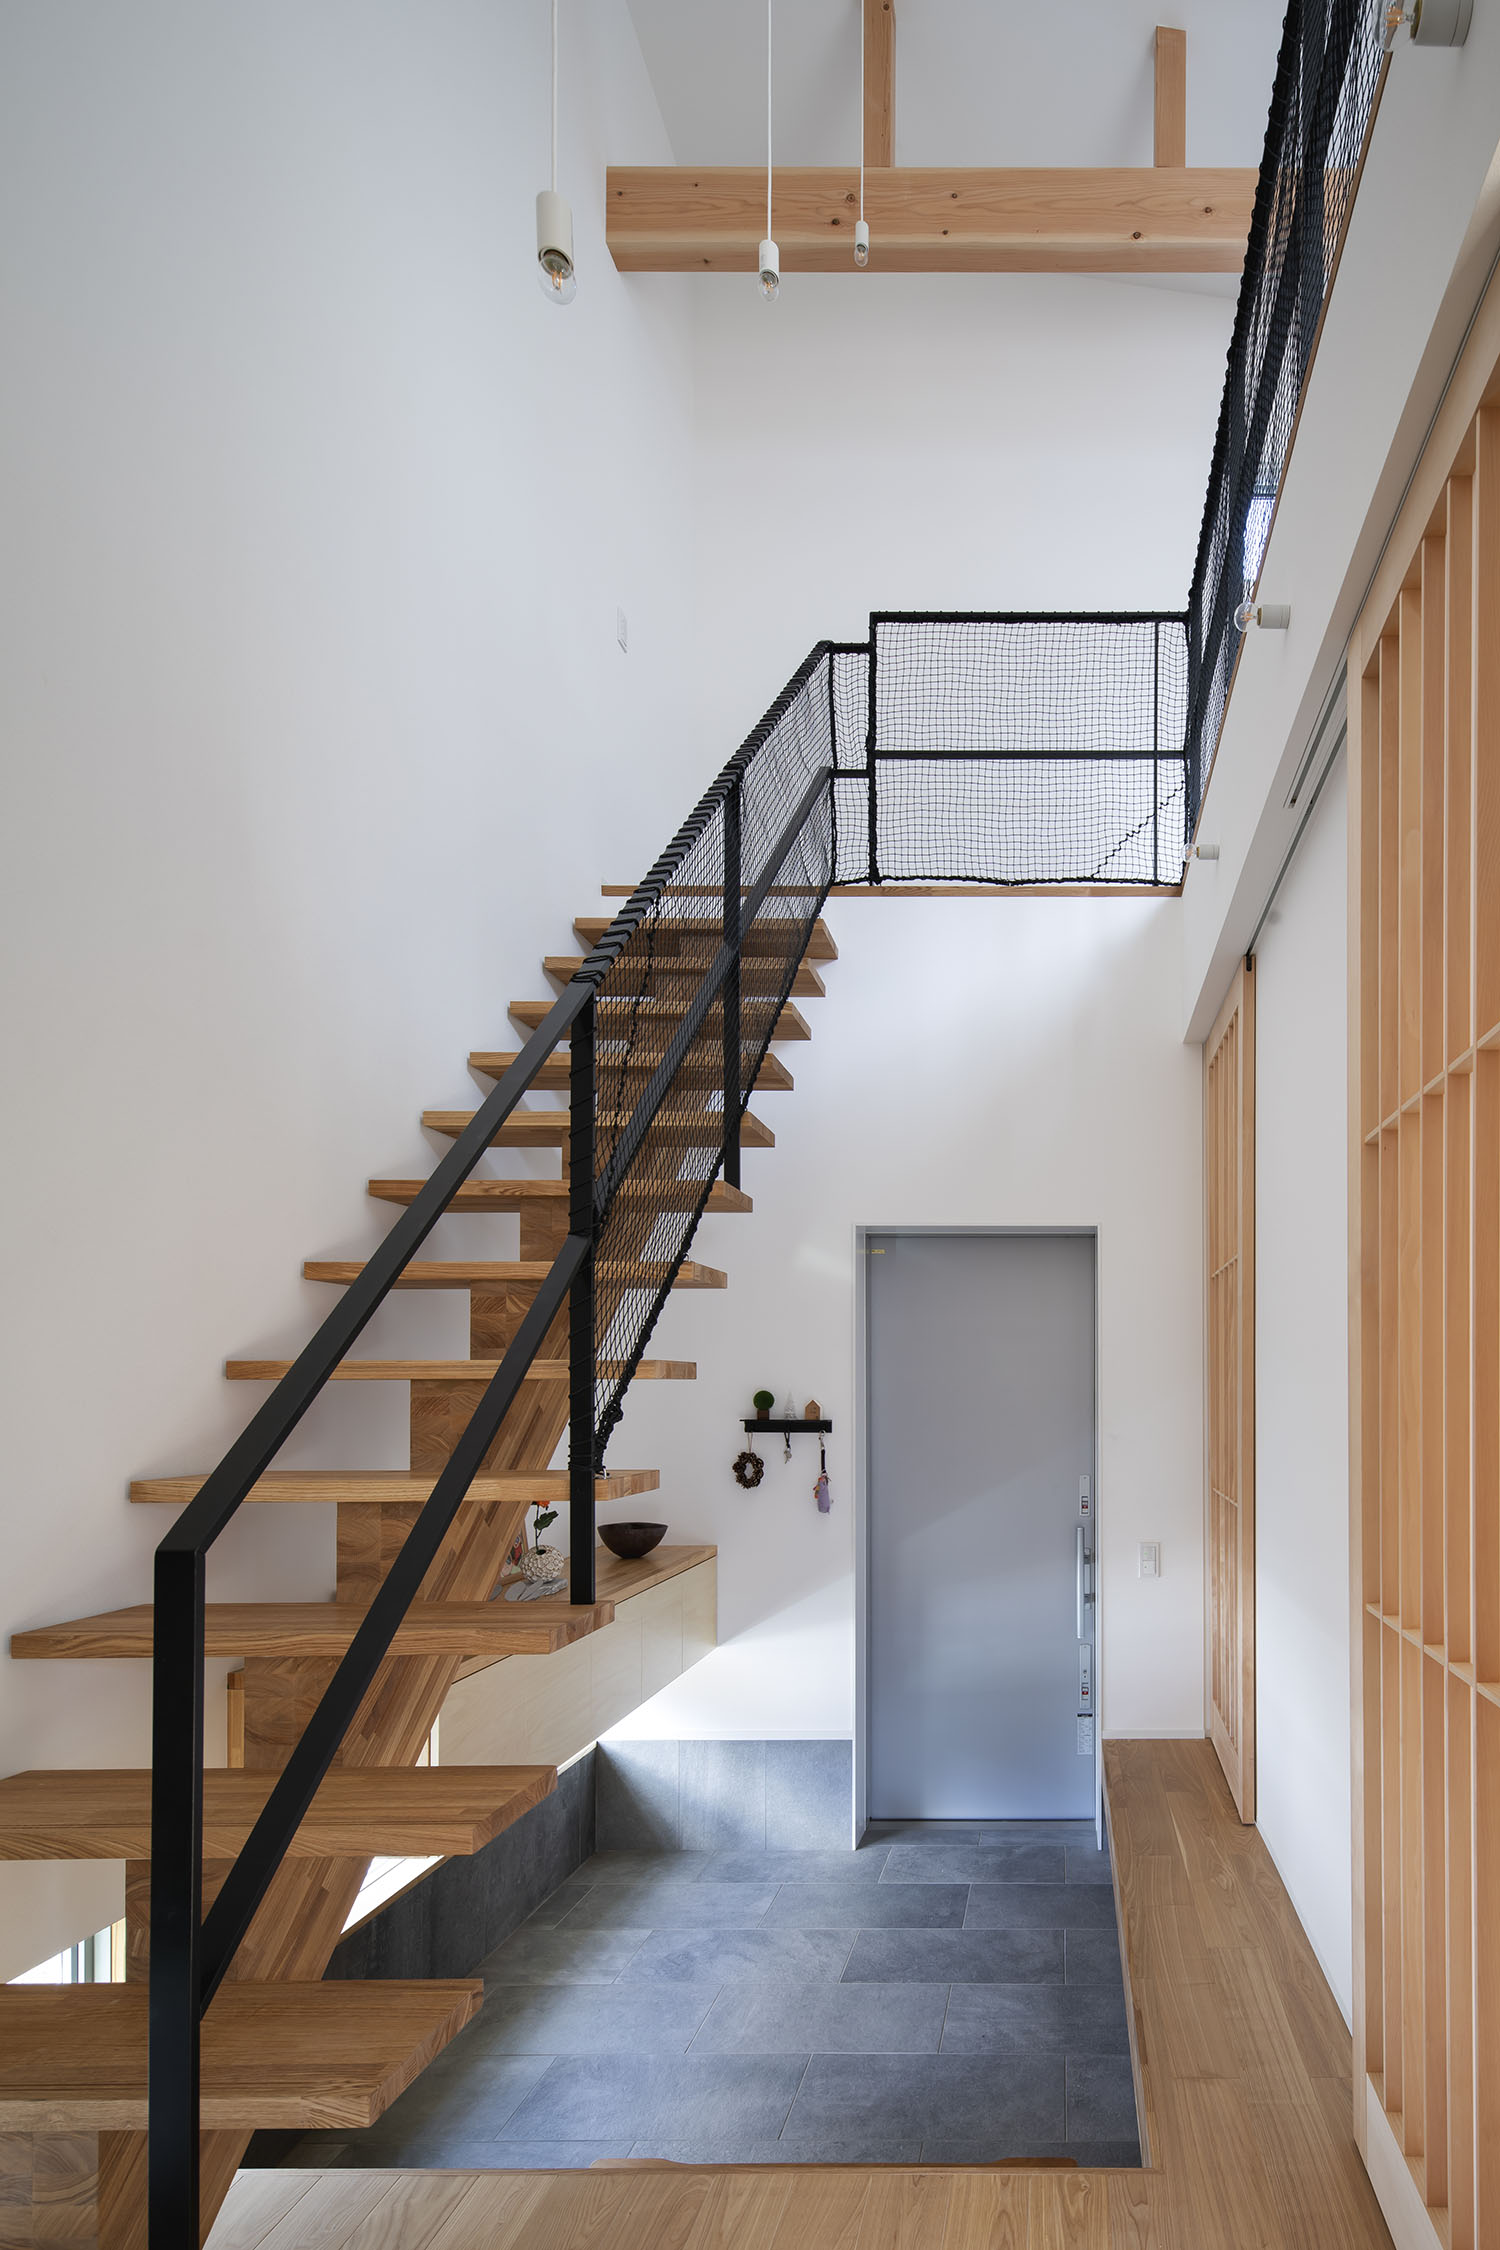 木製のスケルトン階段が横切るグレーのタイルの玄関・デザイン住宅